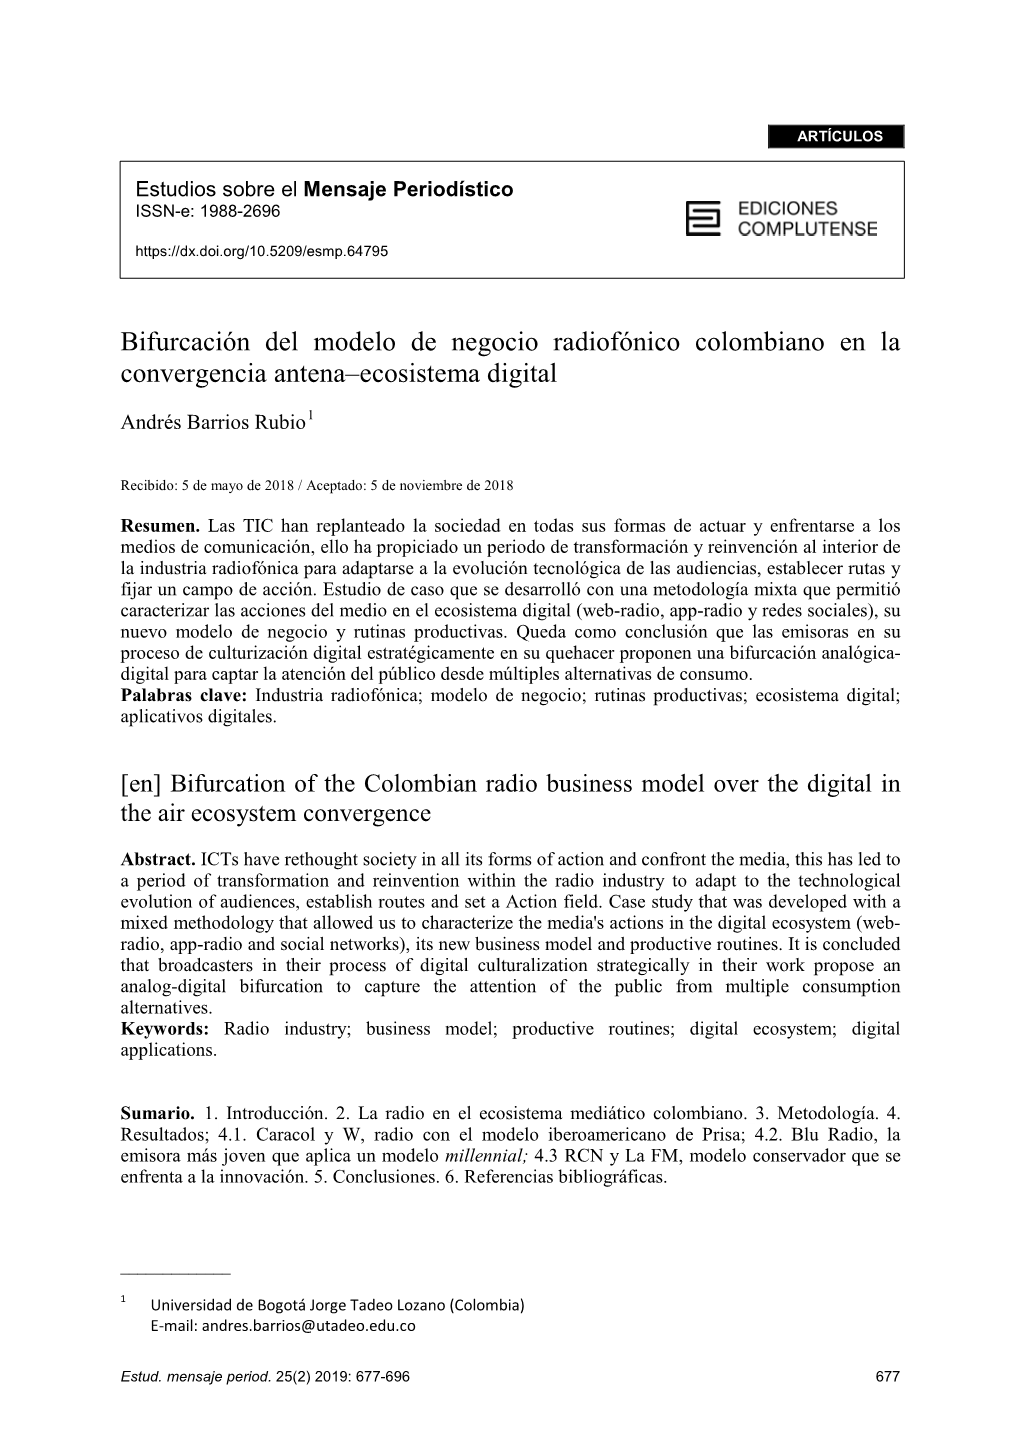 Bifurcación Del Modelo De Negocio Radiofónico Colombiano En La Convergencia Antena–Ecosistema Digital